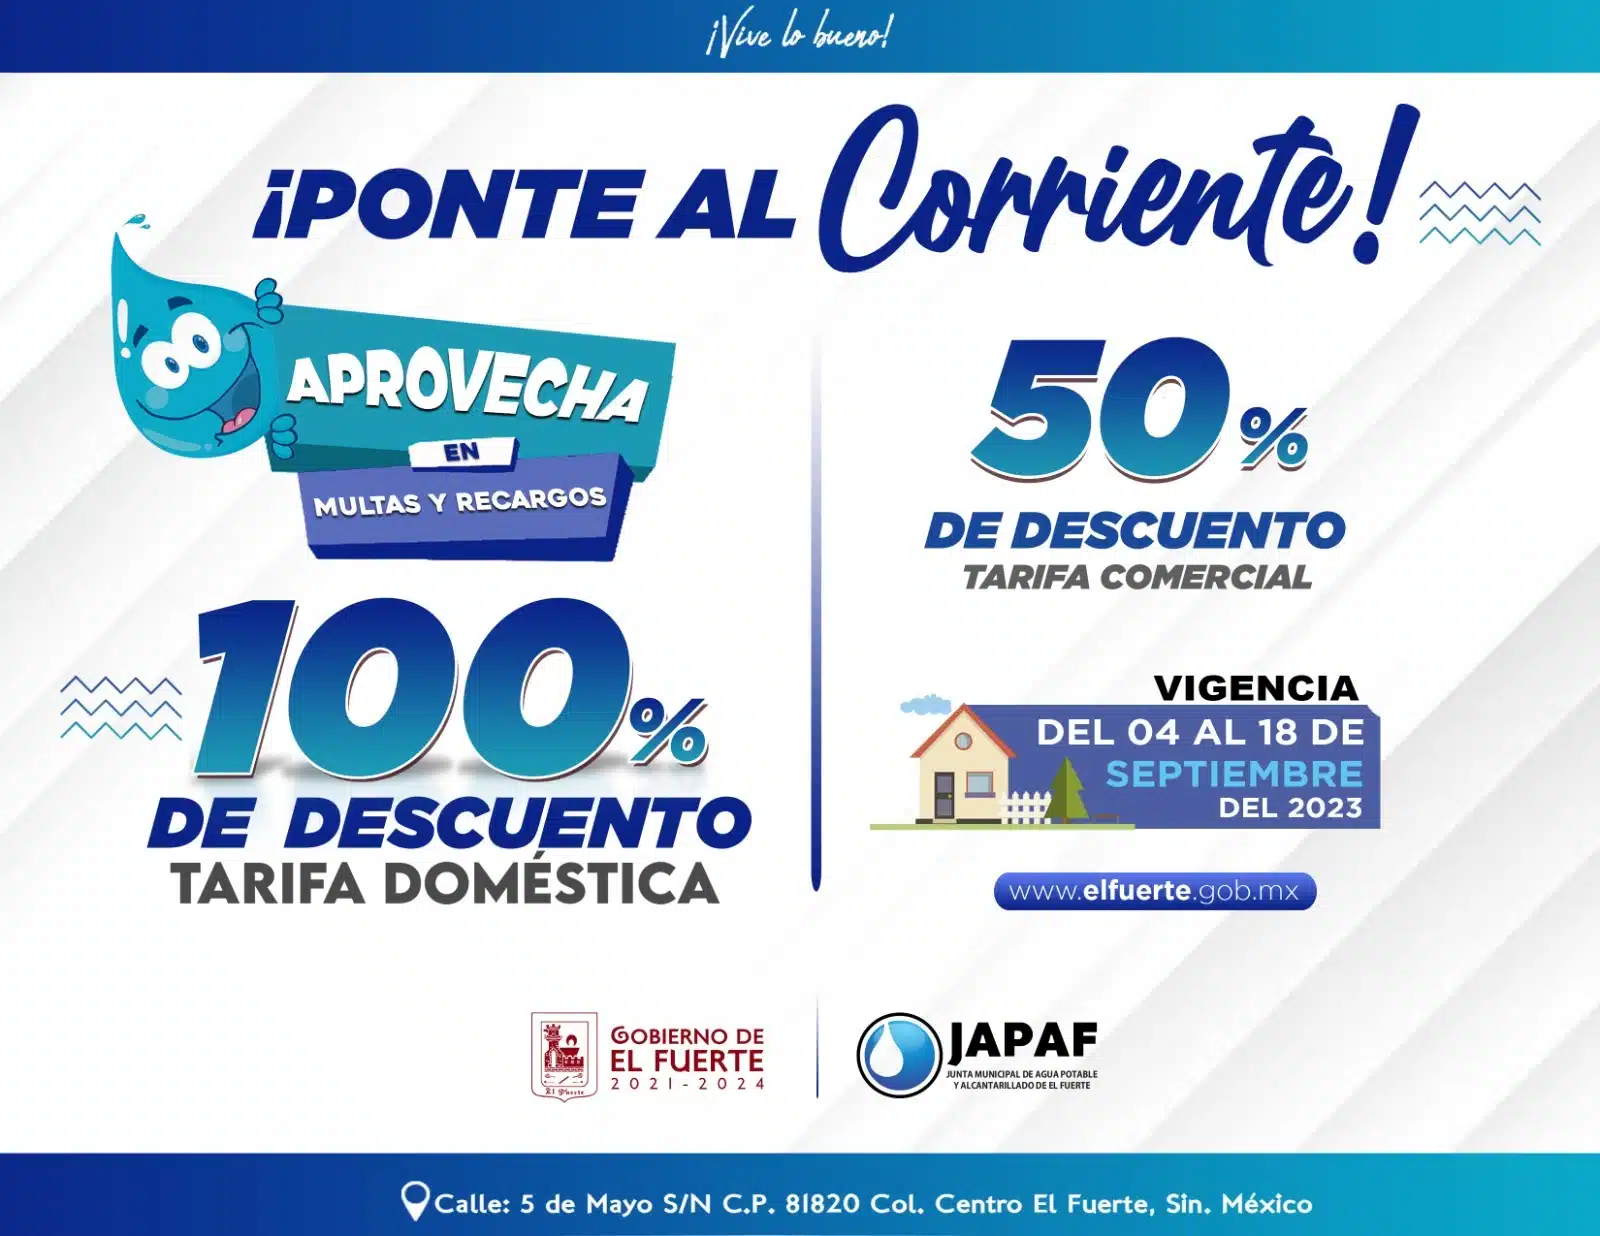 ¡Atención! Japaf lanza campaña de regularización de adeudos para todos sus usuarios en El Fuerte 